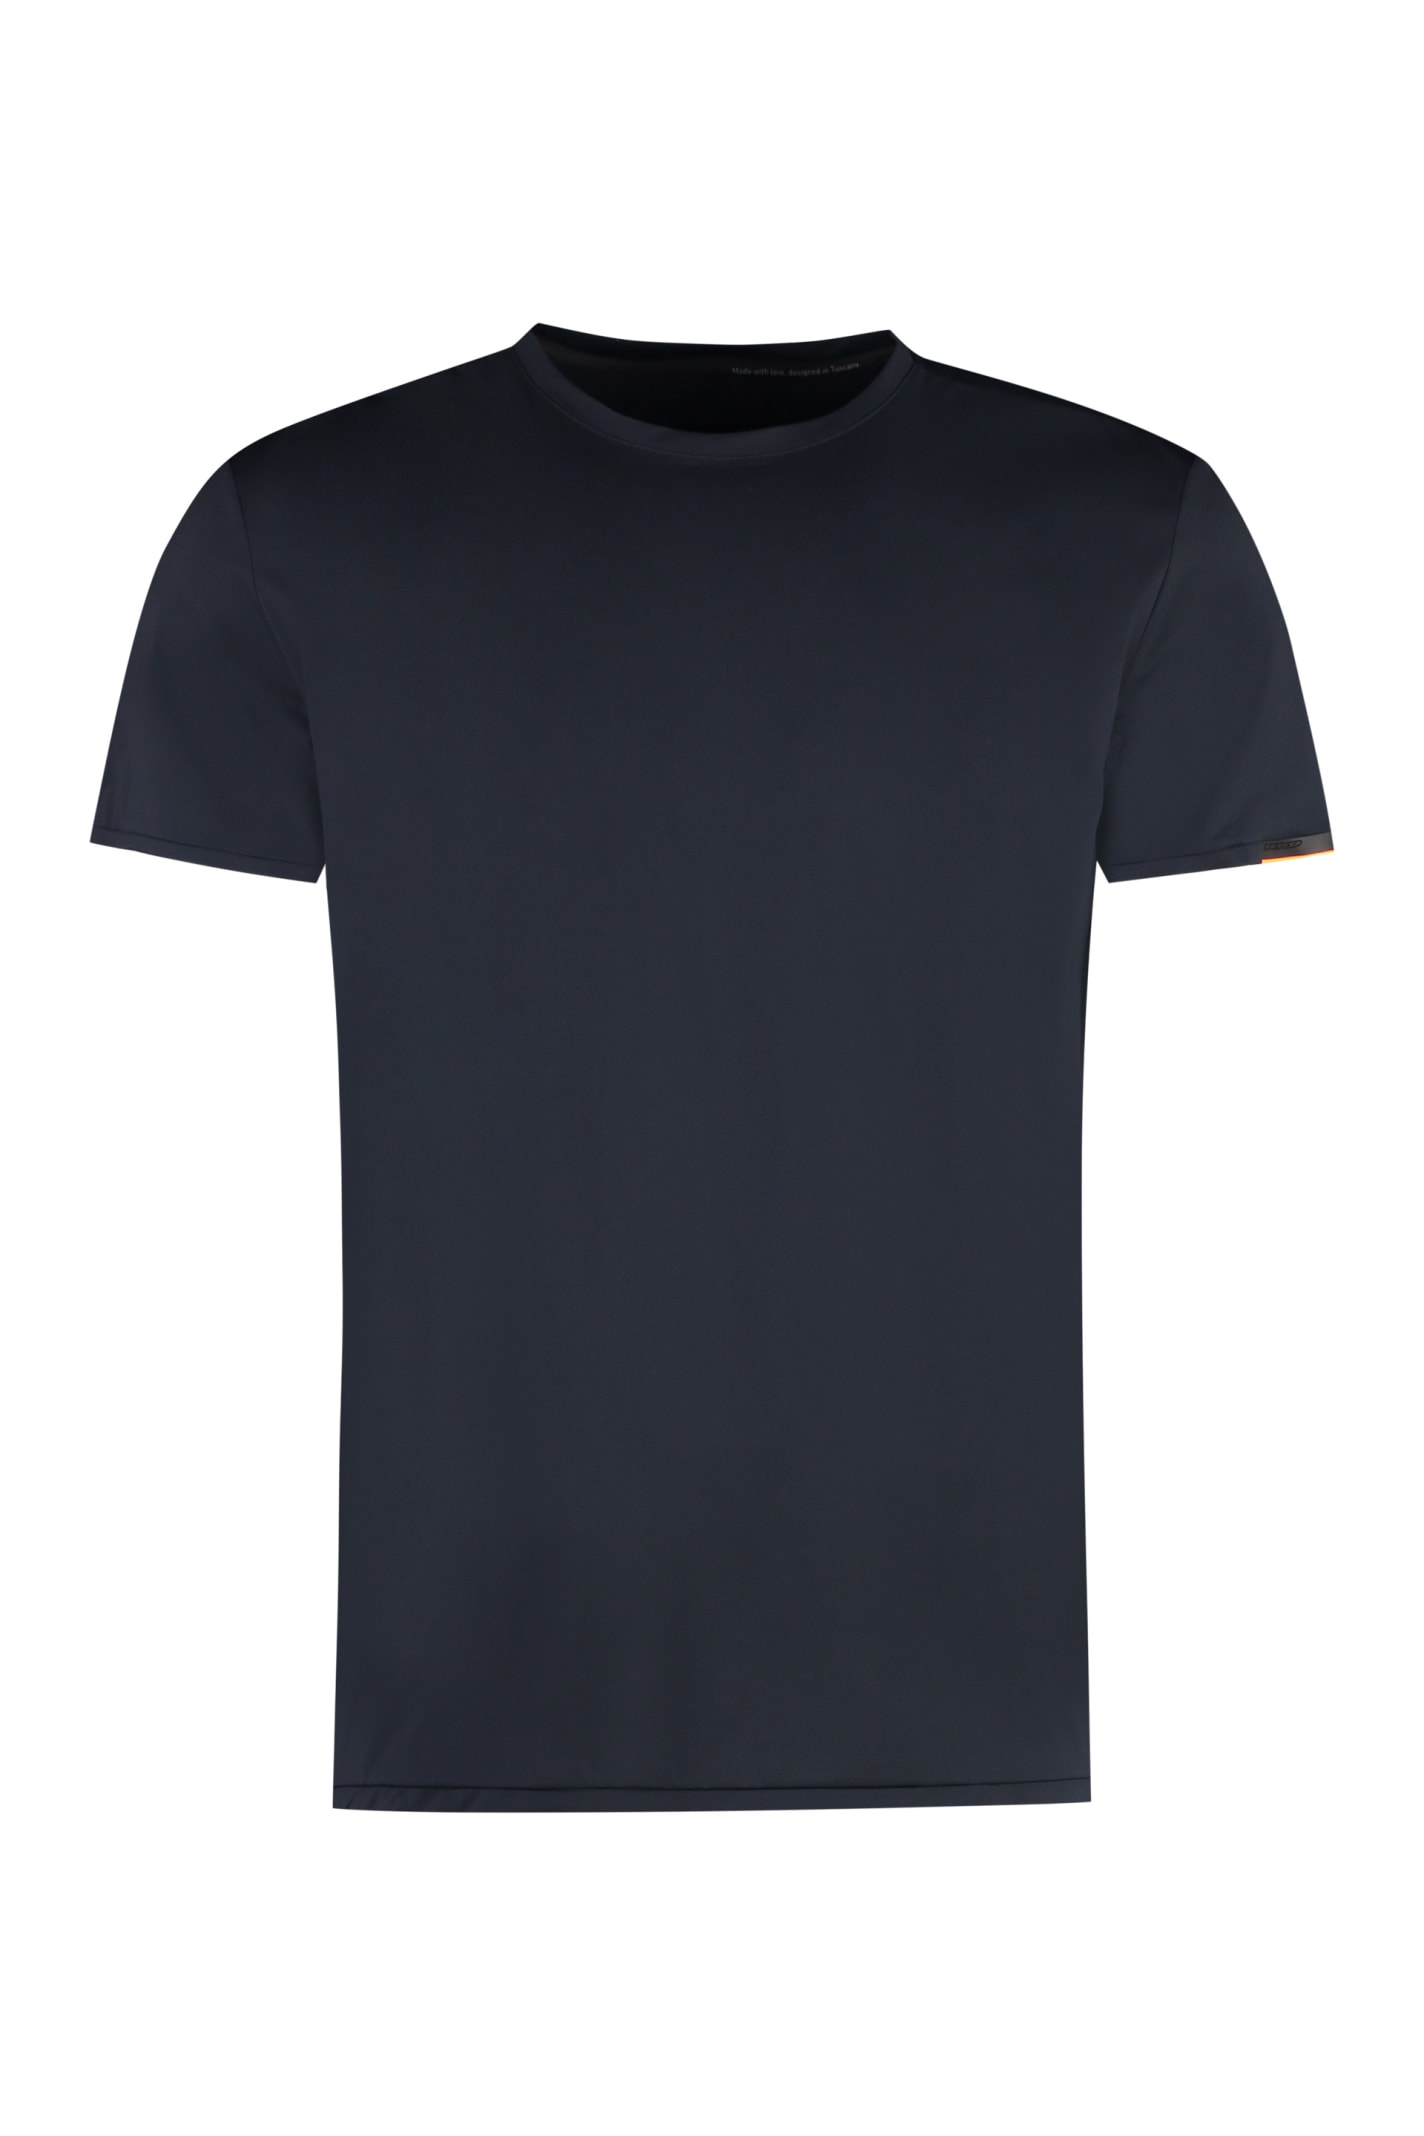 Rrd - Roberto Ricci Design Oxford Techno Fabric T-shirt In Blue Black